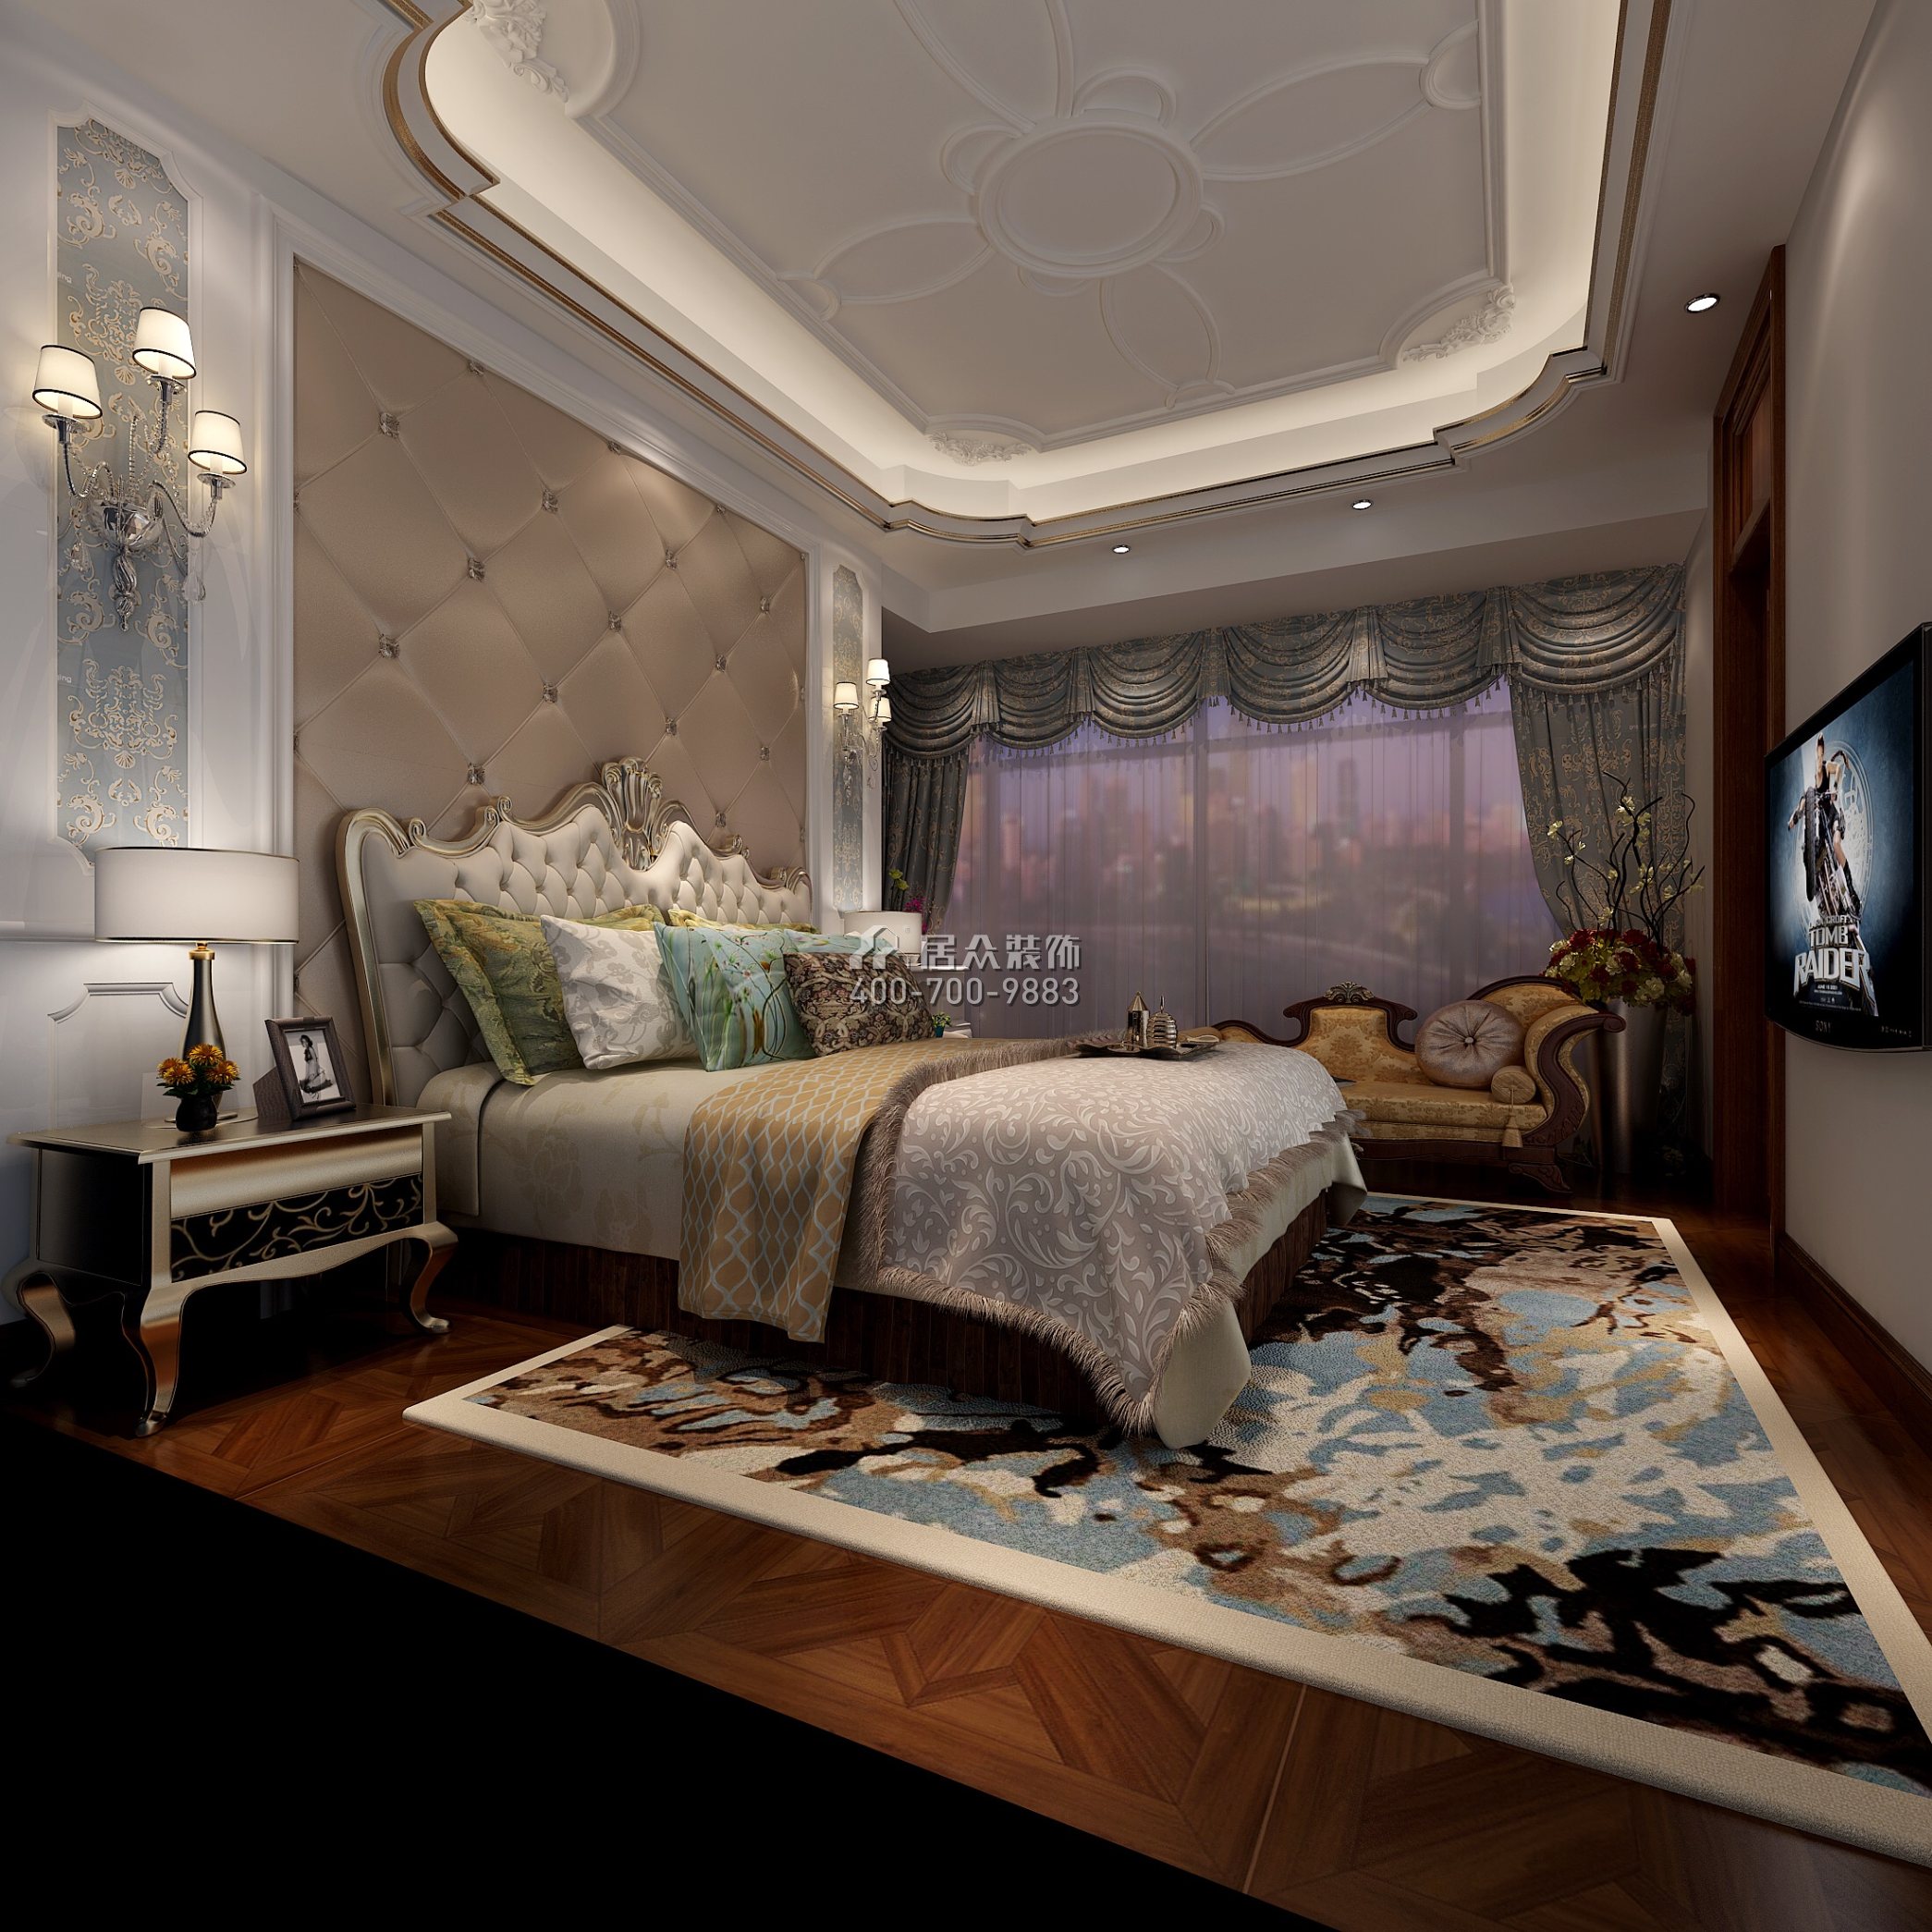 雅居乐花冠集192平方米欧式风格平层户型卧室装修效果图